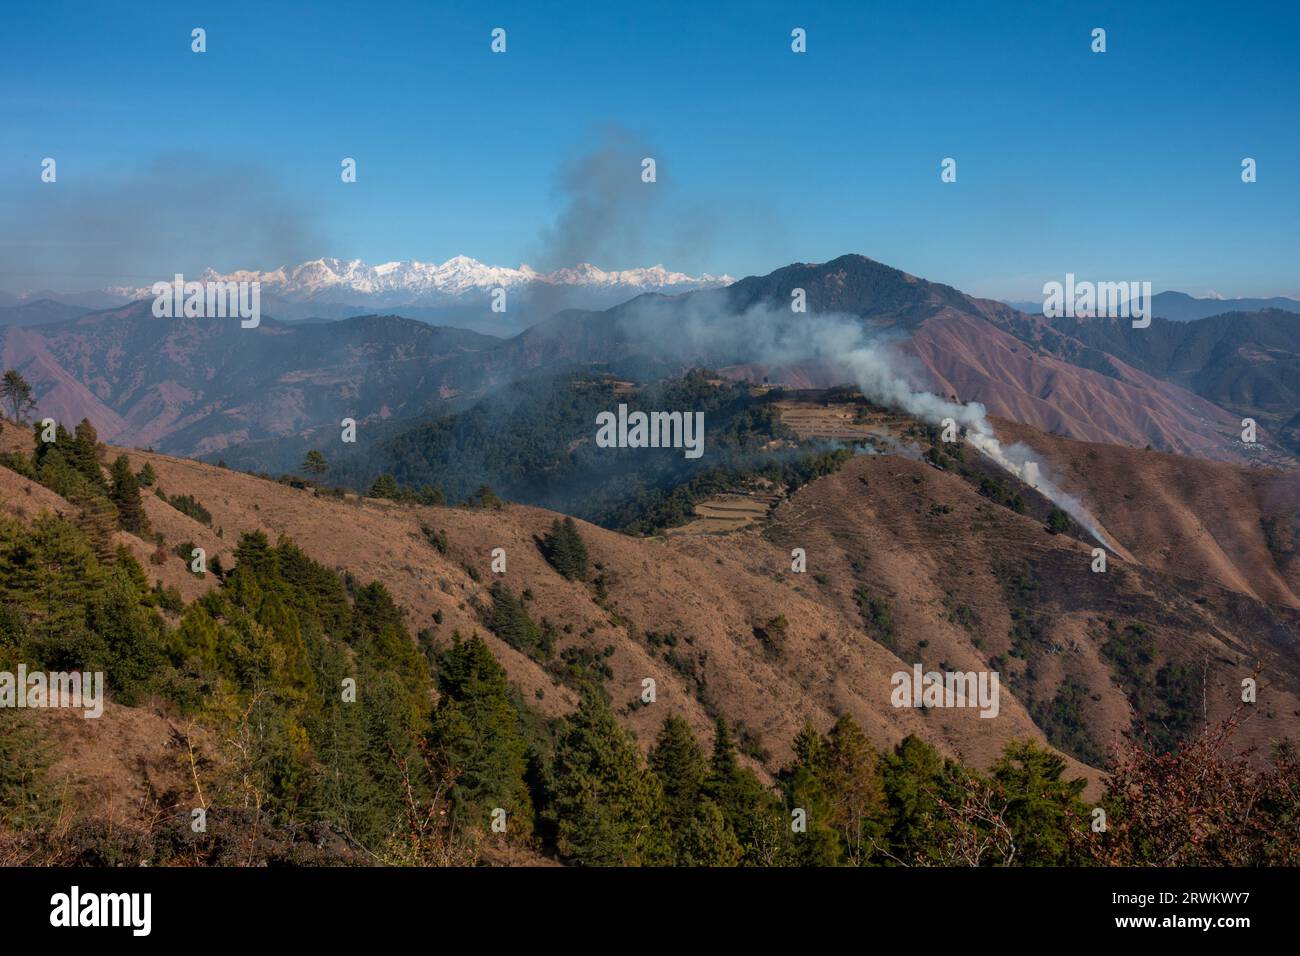 Les feux de forêt montagneux d'été engloutissent le terrain de l'Himalaya supérieur de l'Uttarakhand dans la région de Tehri Garhwal, en Inde, soulignant l'impact du climat Banque D'Images